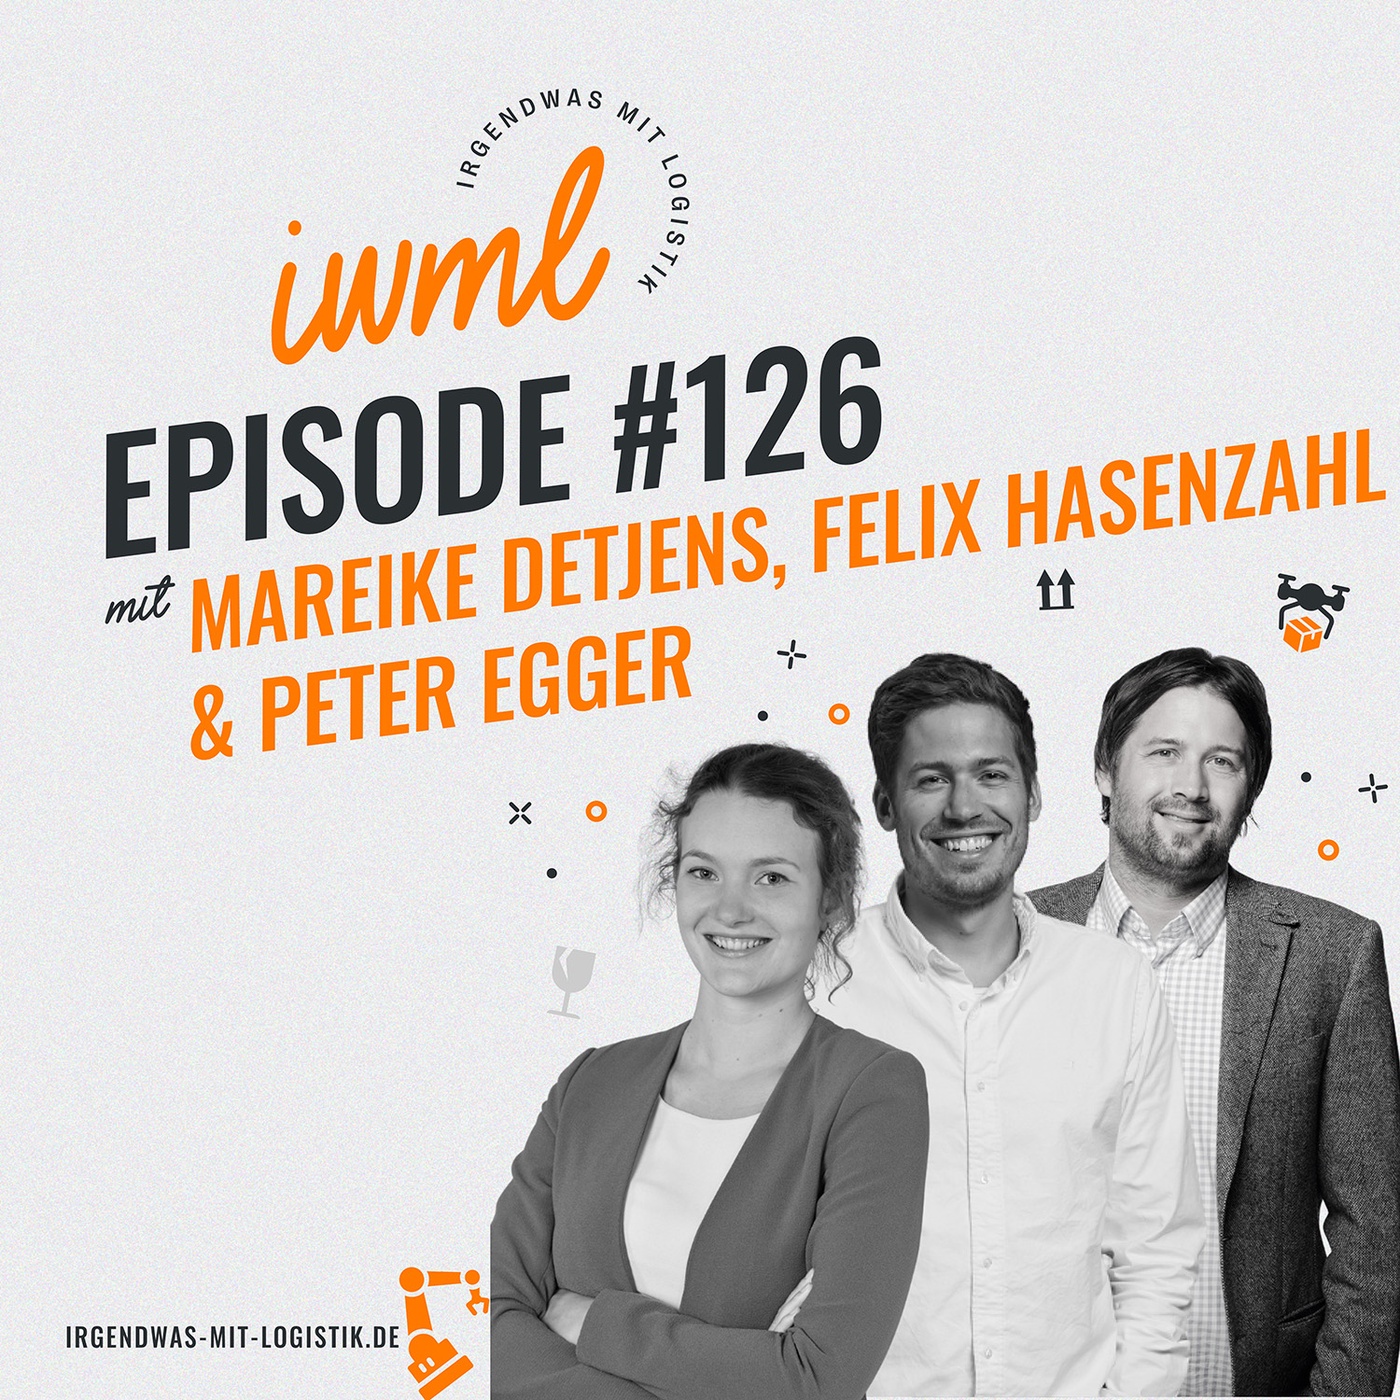 IWML #126 mit Mareike Detjens von Bergfreunde.de, Felix Hasenzahl von Seven Senders & Peter Egger von MS-Direct